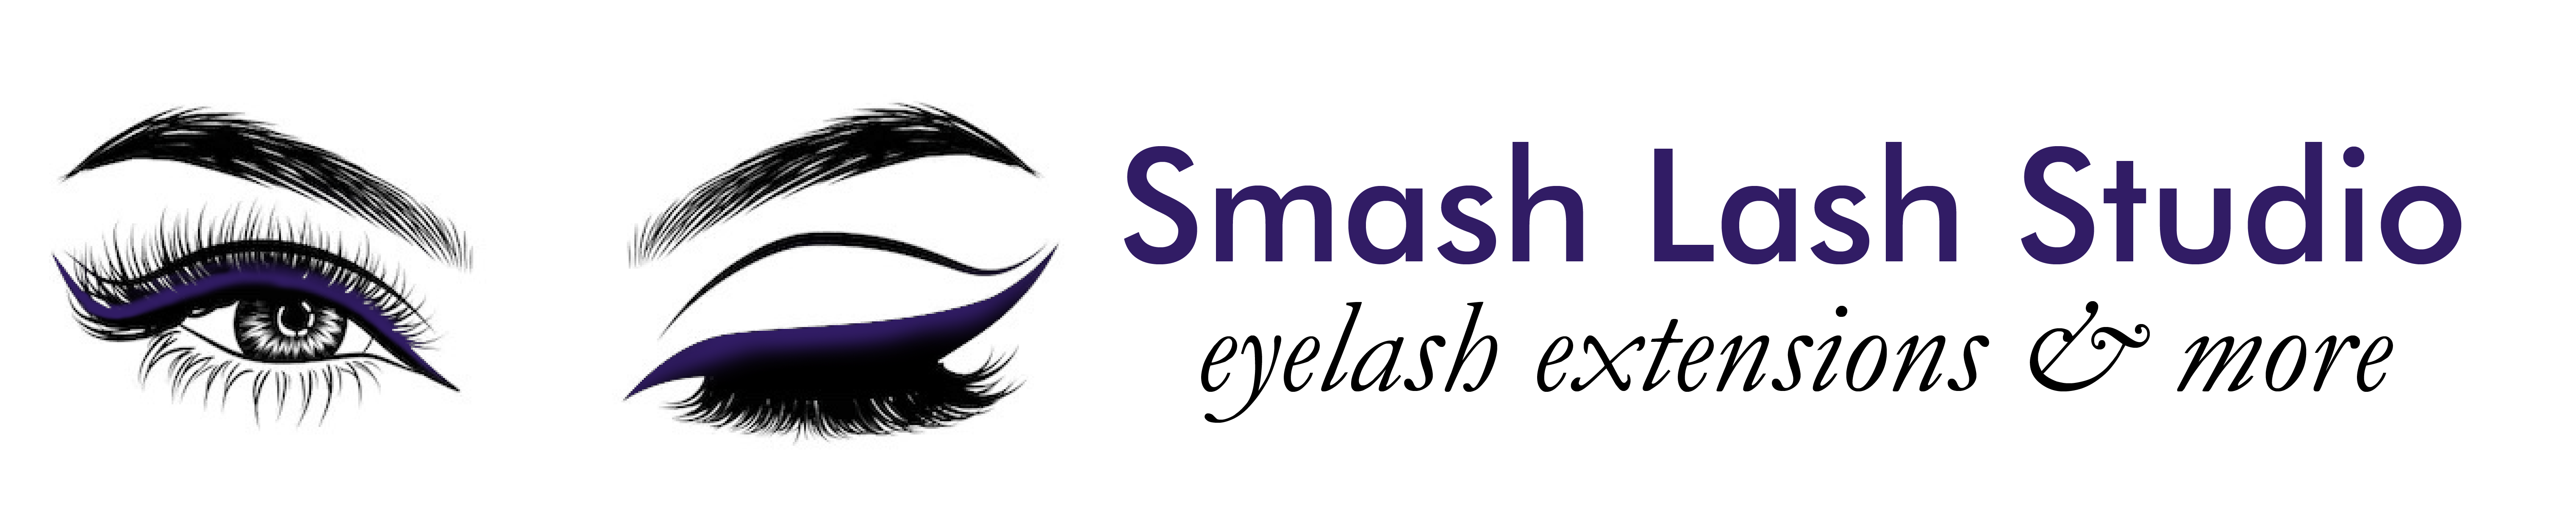 Smash Lash Studio